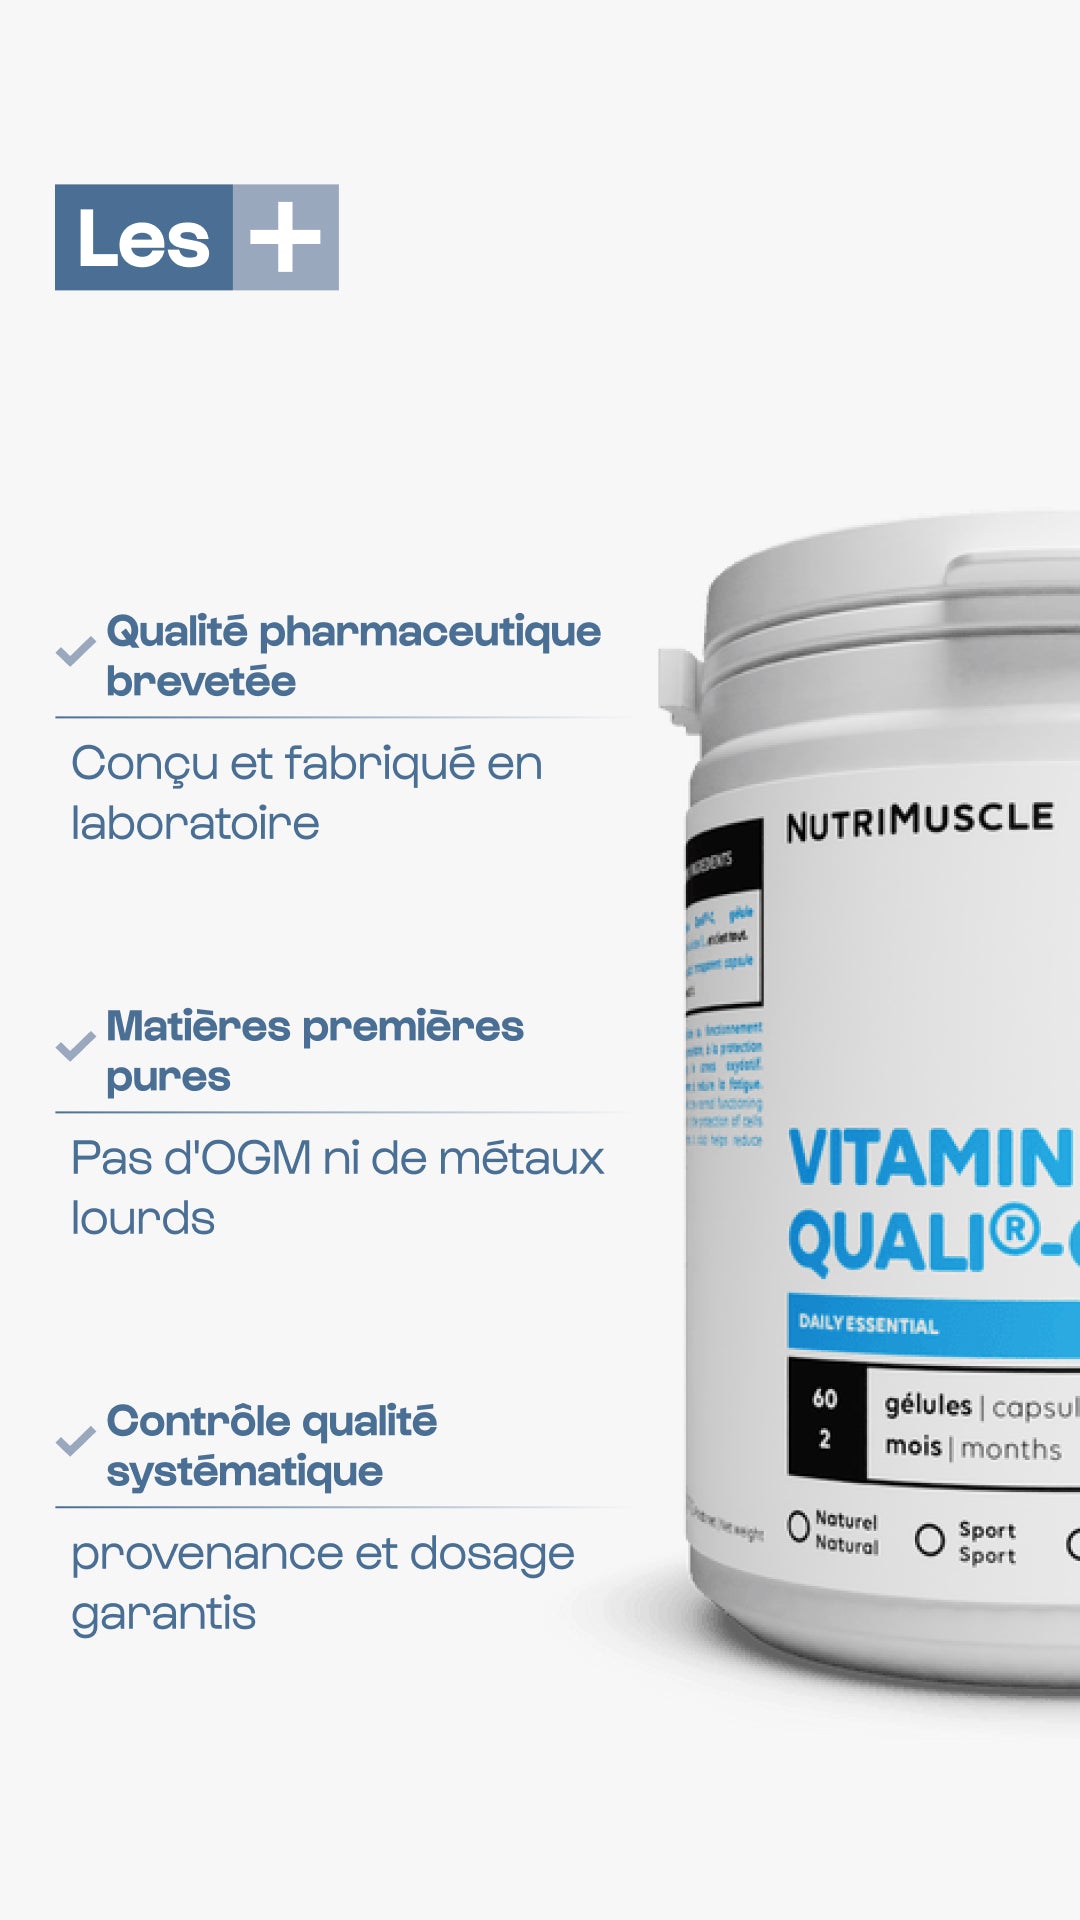 Vitamina C Qualiti®c in capsule